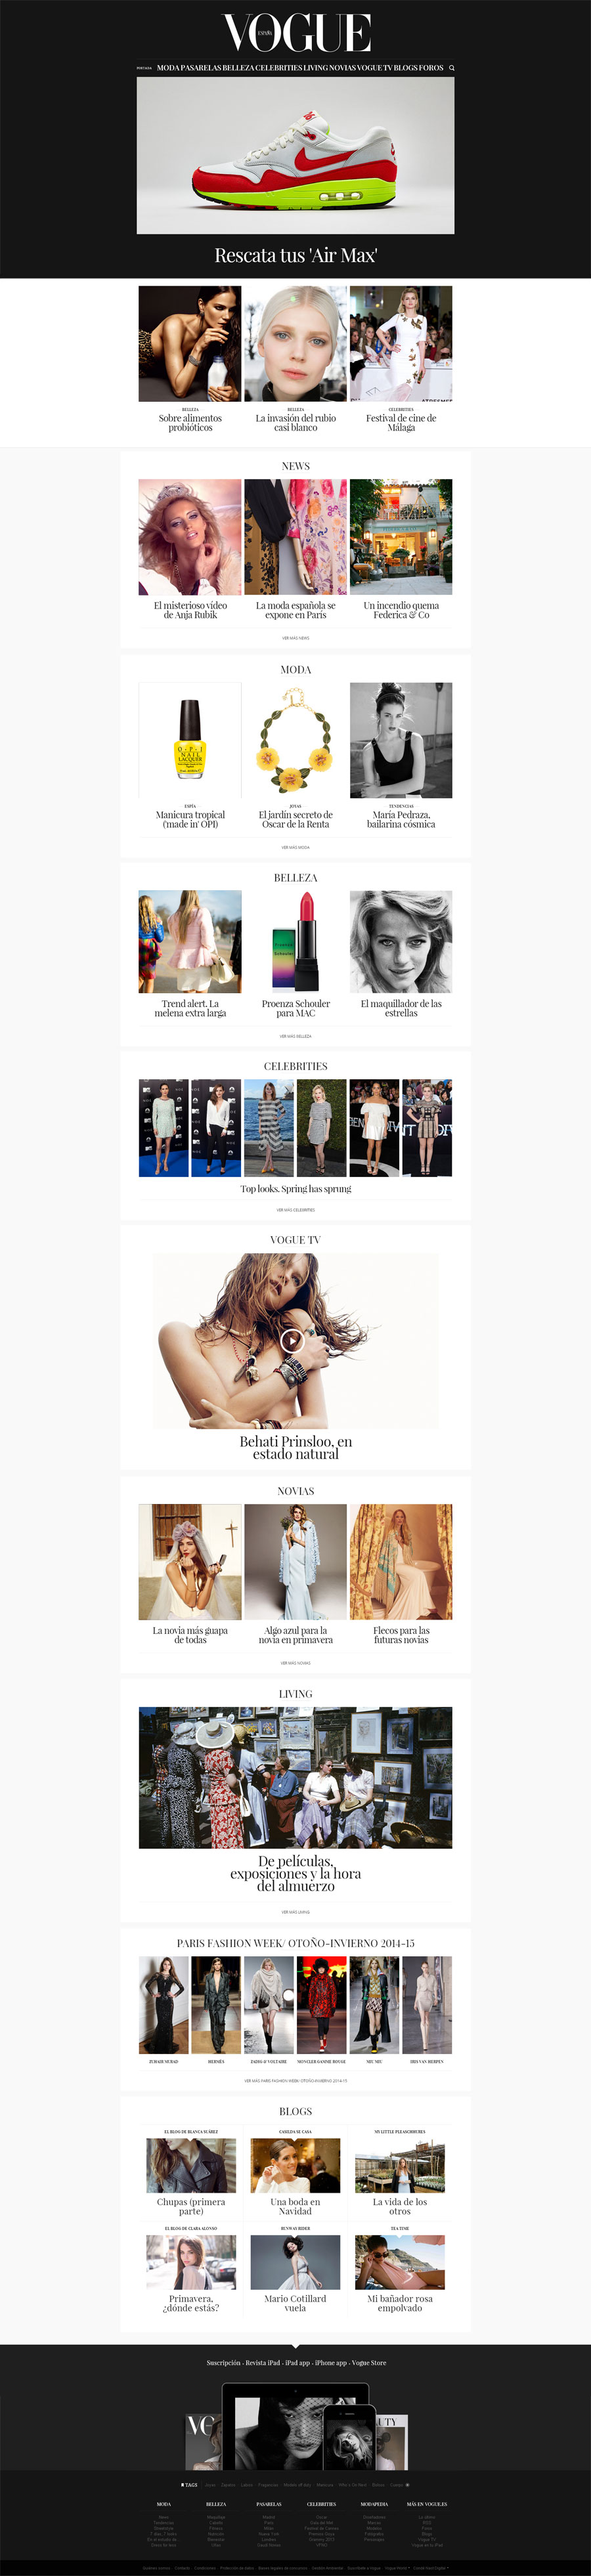 Vogue España - Inspiración web design